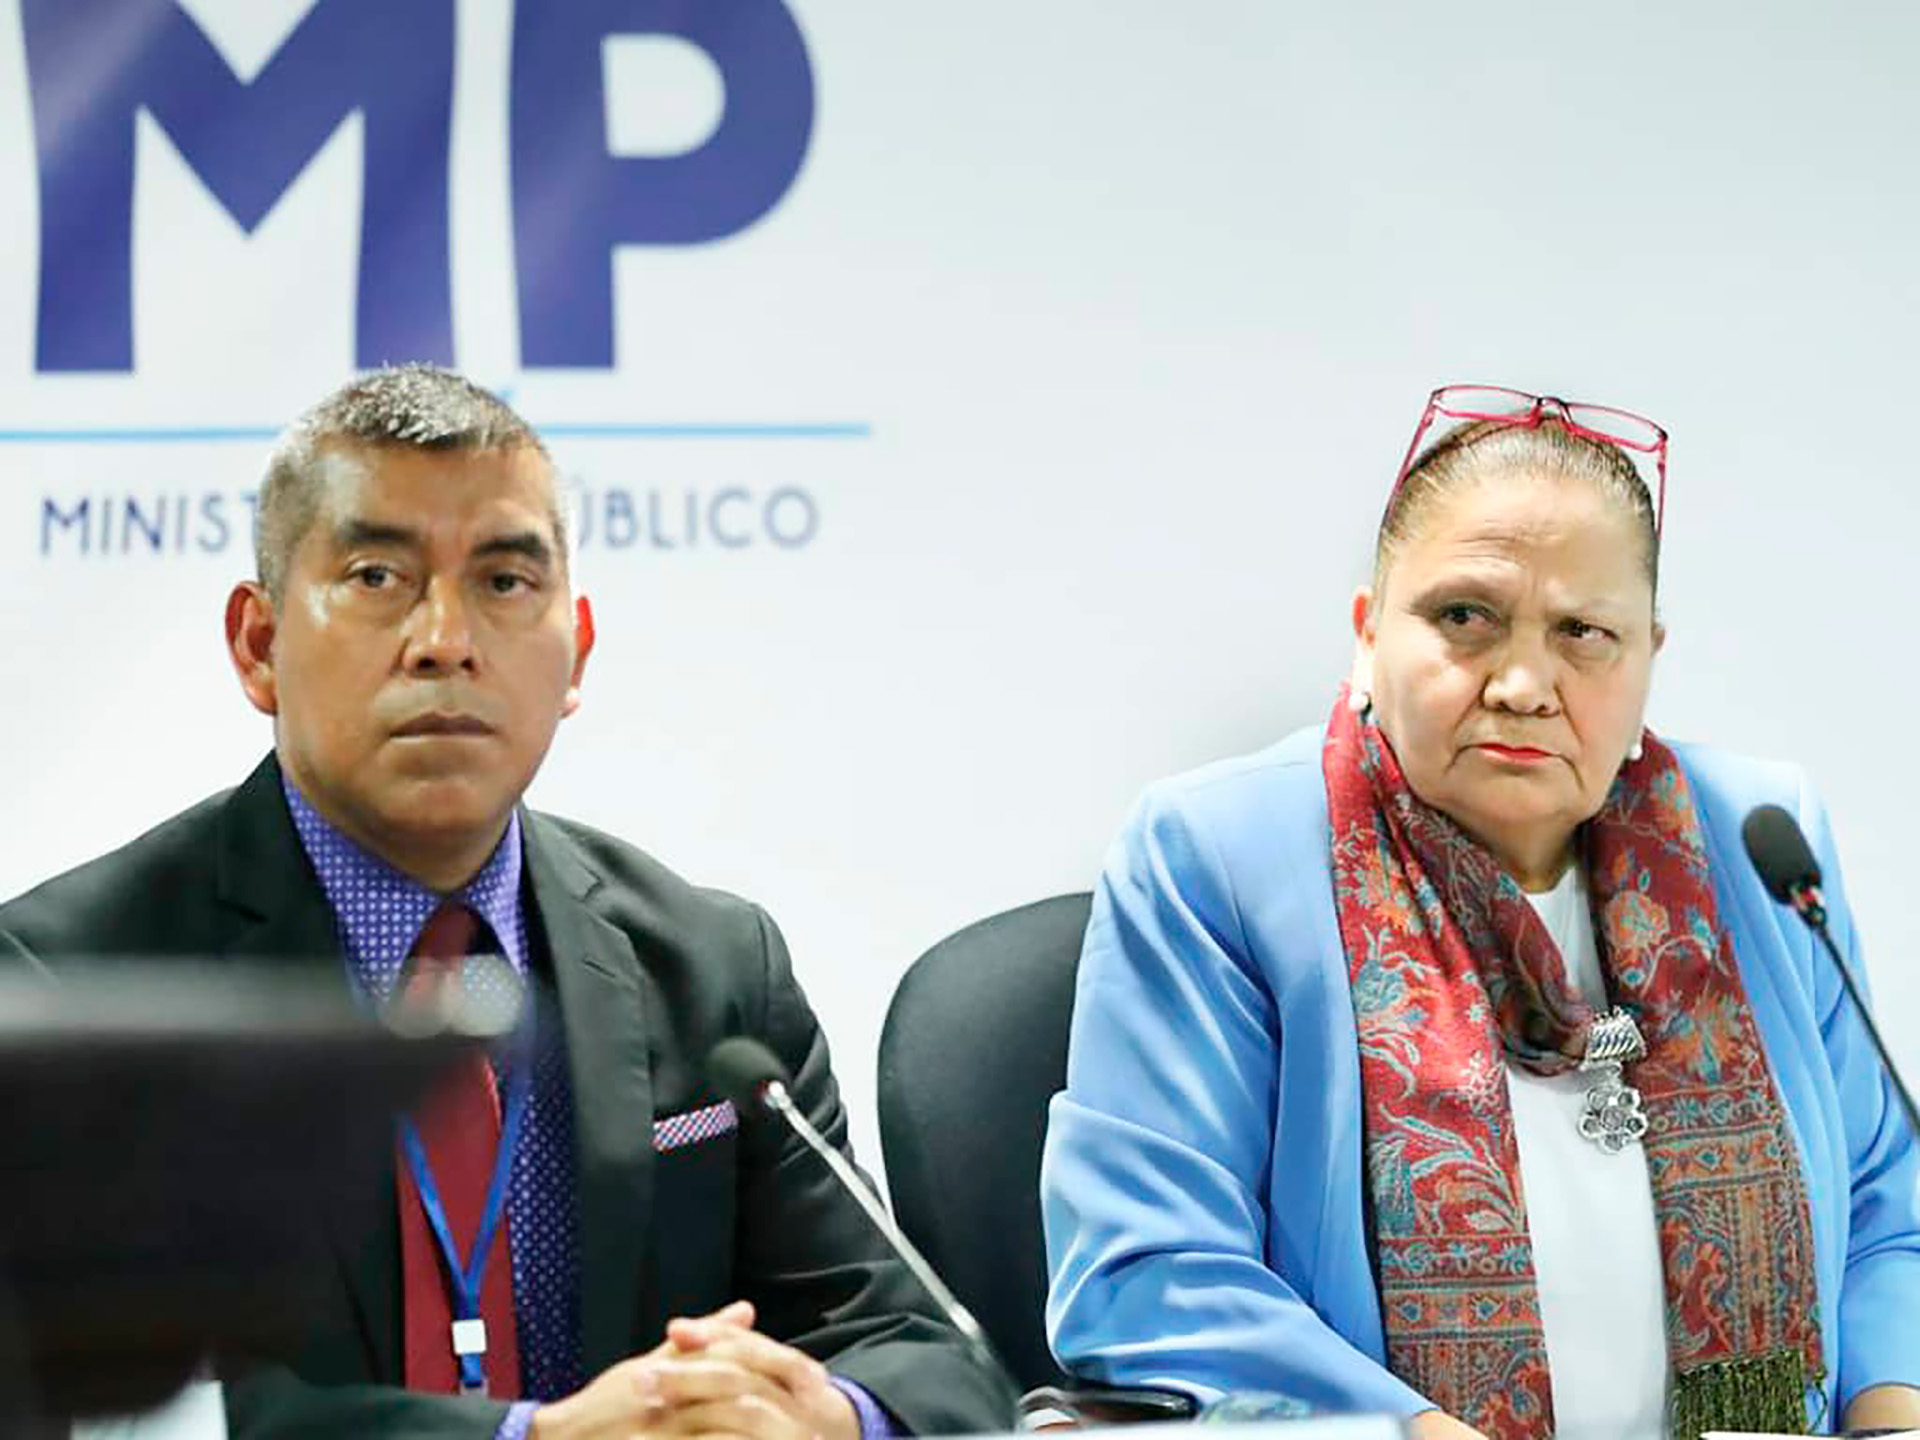 Rafael Curruchiche (izquierda), jefe de la Fiscalía Especial Contra la Impunidad (FECI) de Guatemala, y su jefa, la fiscal general Consuelo Porras. Ambos han sido señalados como funcionarios corruptos y antidemocráticos. Curruchiche lidera la persecución a un candidato presidencial en Guatemala.